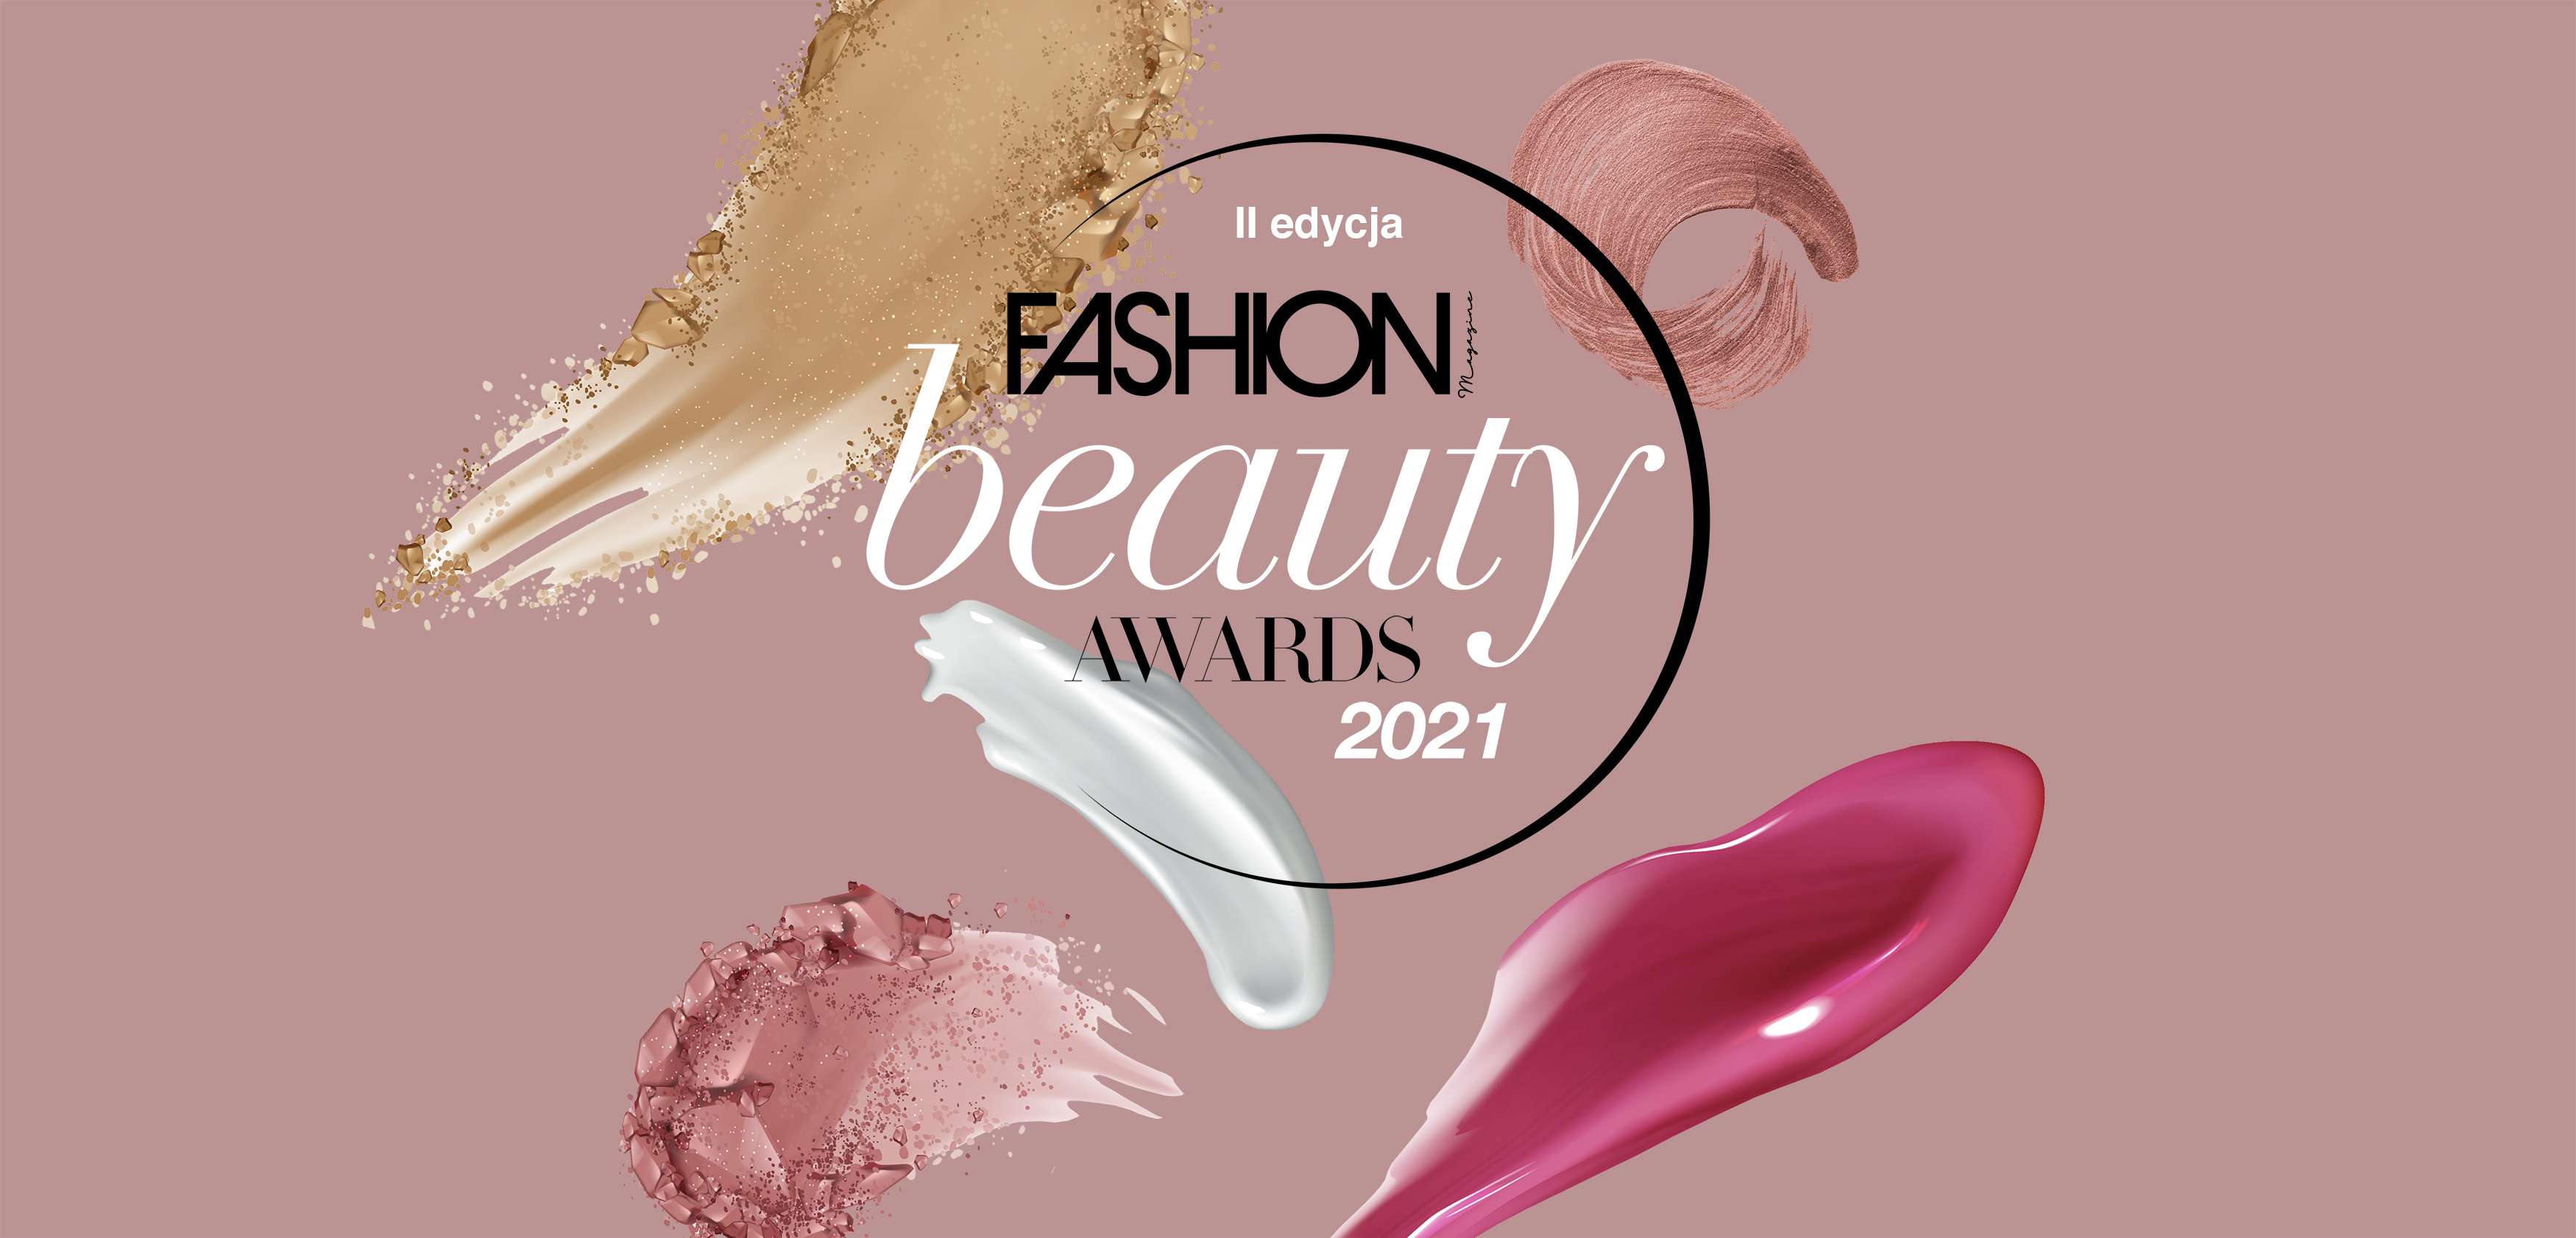 Fashion Magazine Beauty Awards 2021: oto ZWYCIĘZCY